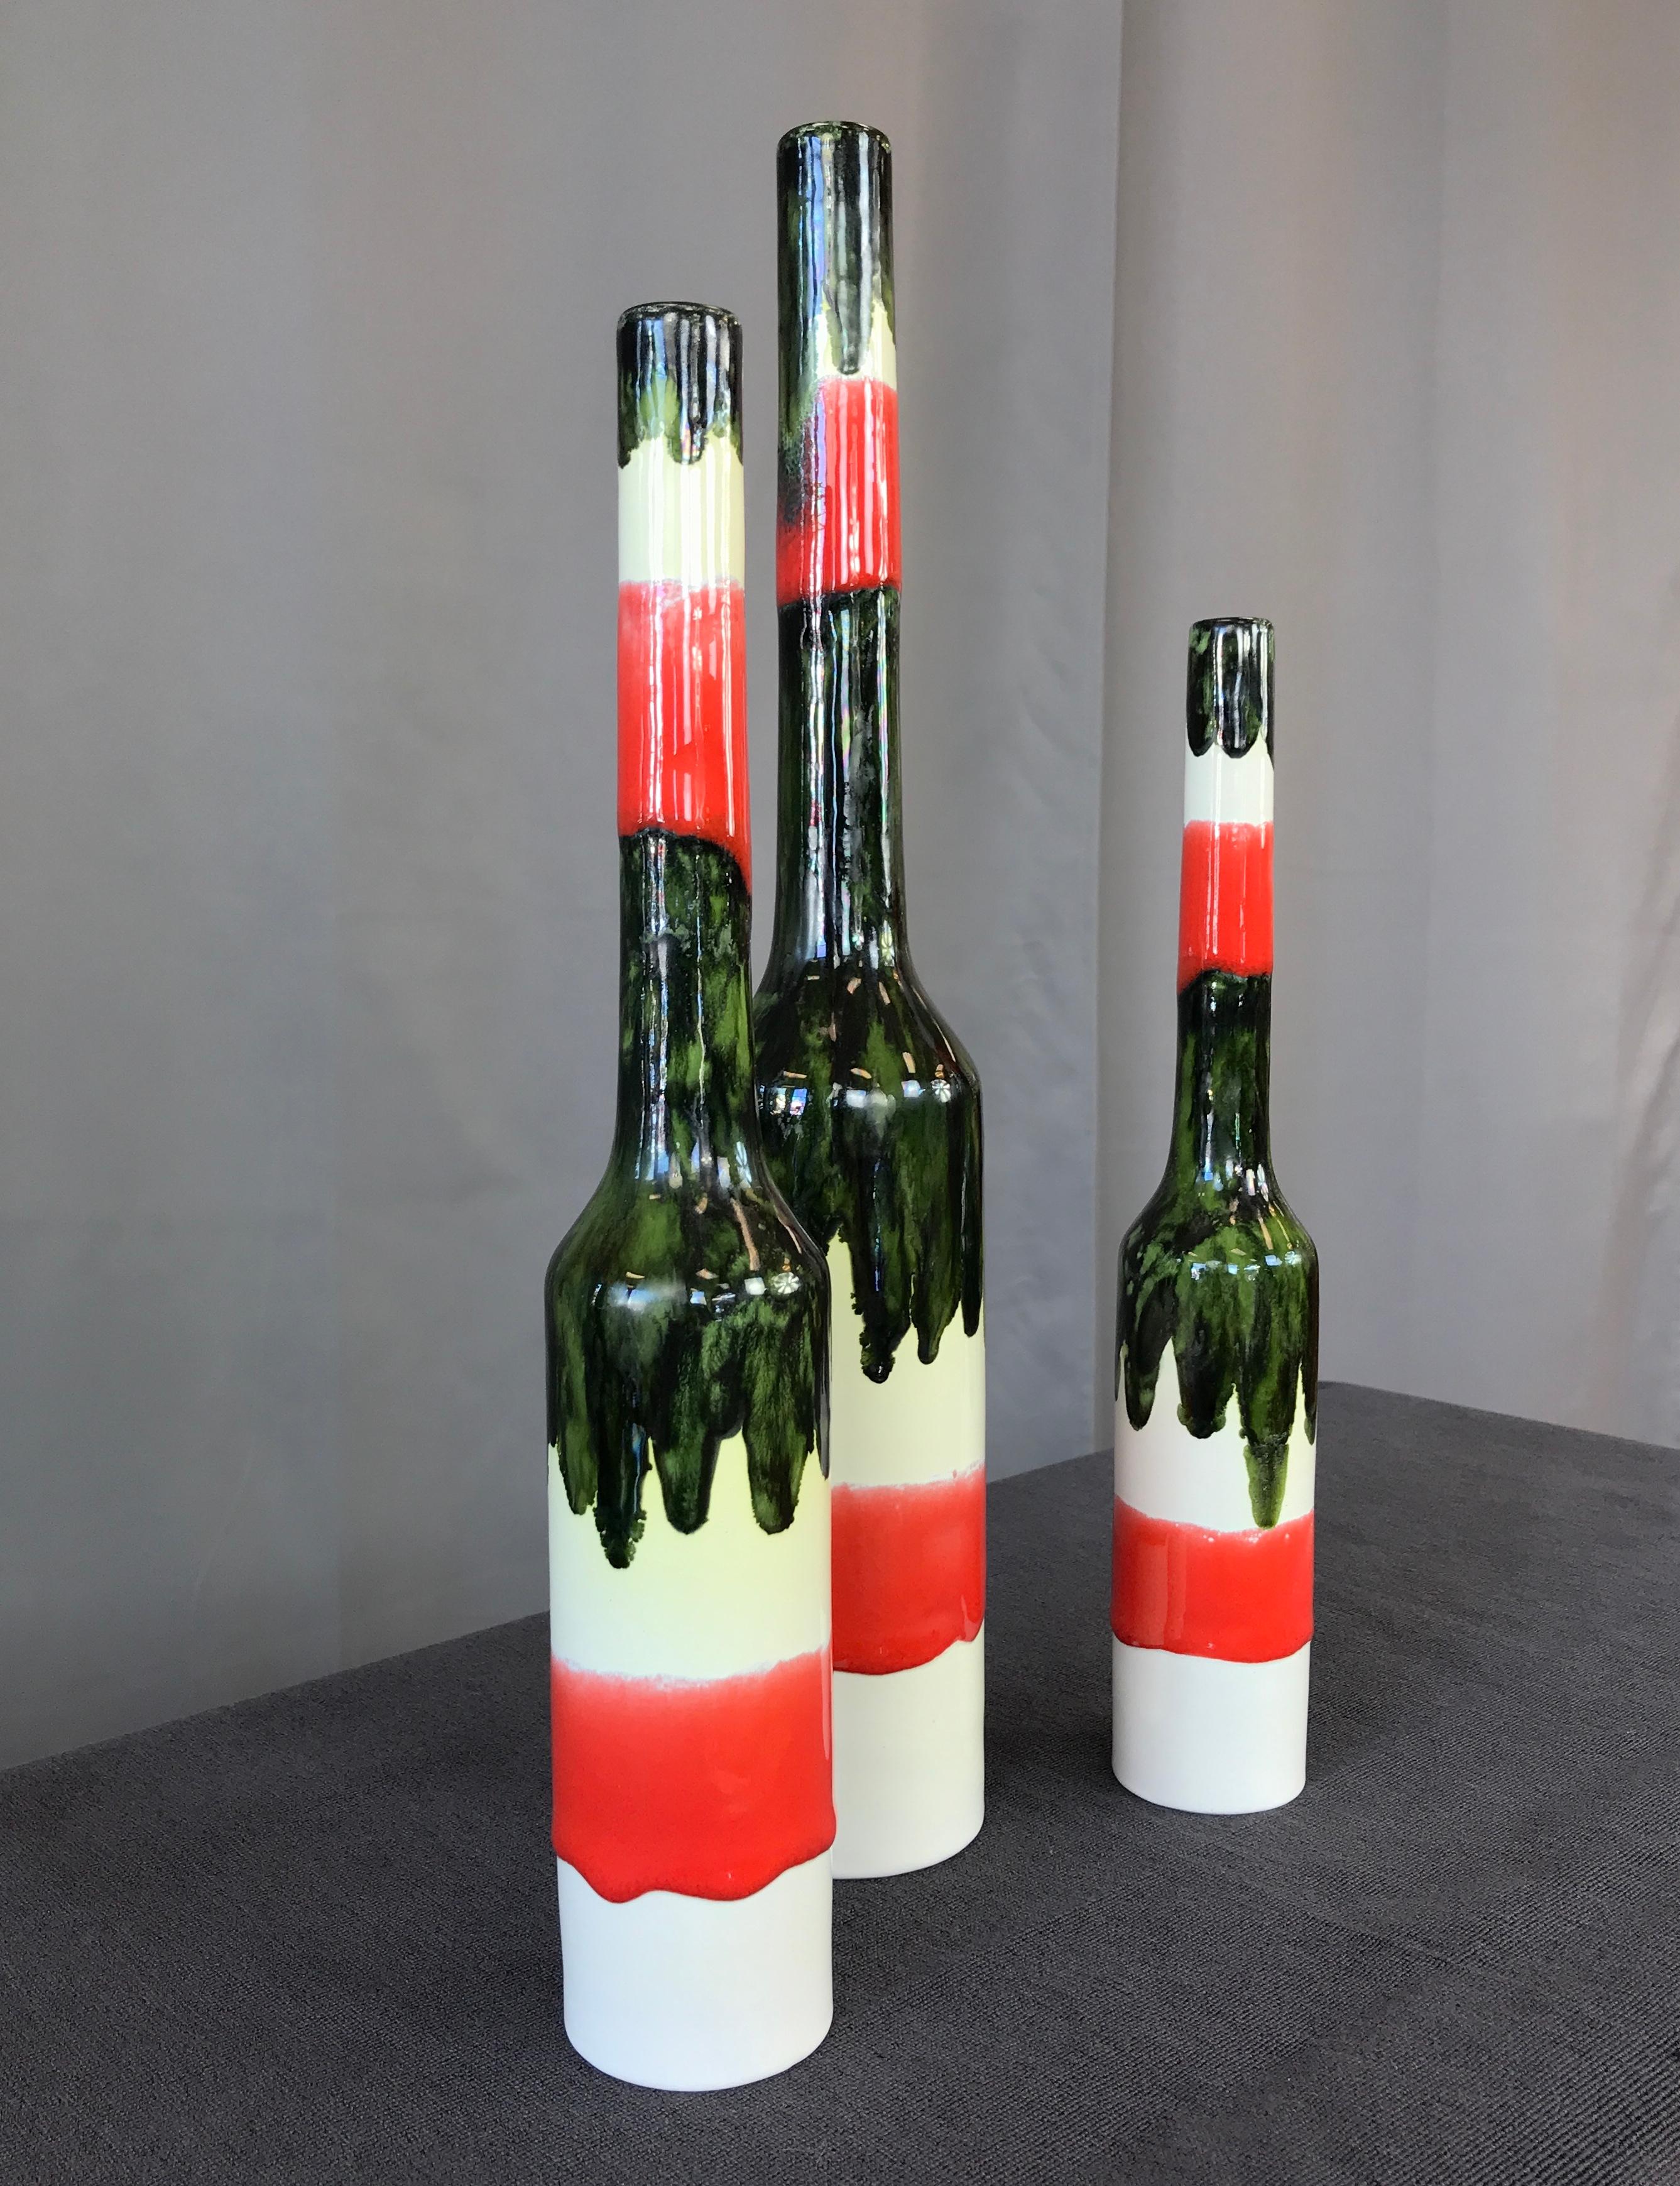 Trois vases San Polo de différentes hauteurs . 15 3/4, 13 1/4 et 11 5/8, circa 1950s
Céramique et émaillée, la couleur de base est un blanc crémeux, un rouge et un vert foncé.
Tous marqués sur leurs fesses 

La mesure ci-dessous est celle du